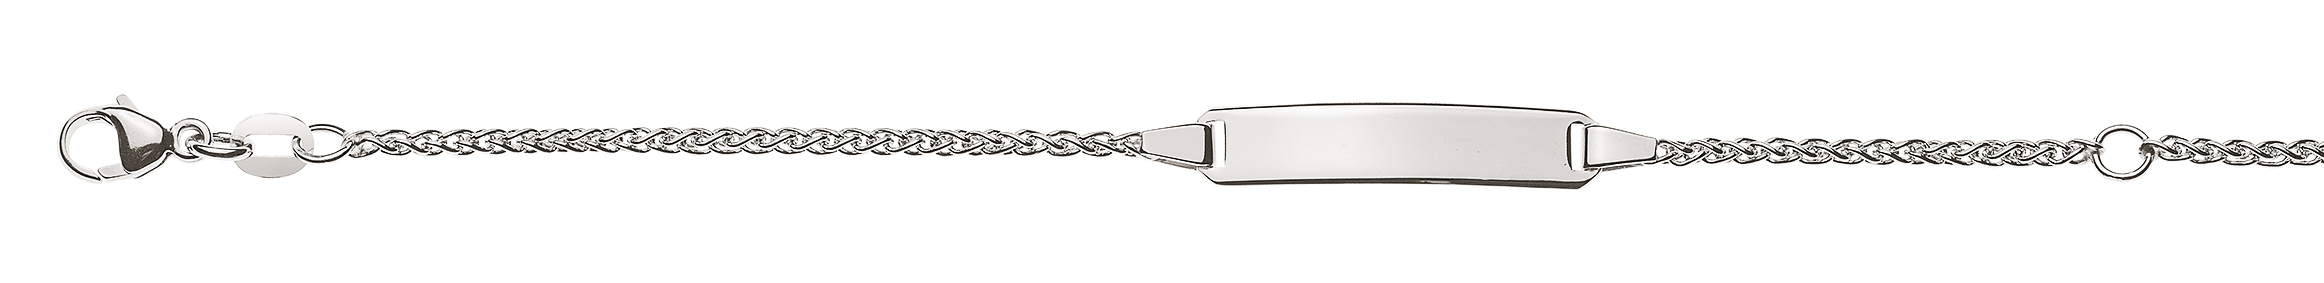 AURONOS Élégance ID-Bracelet 14k white gold plait chain 18cm